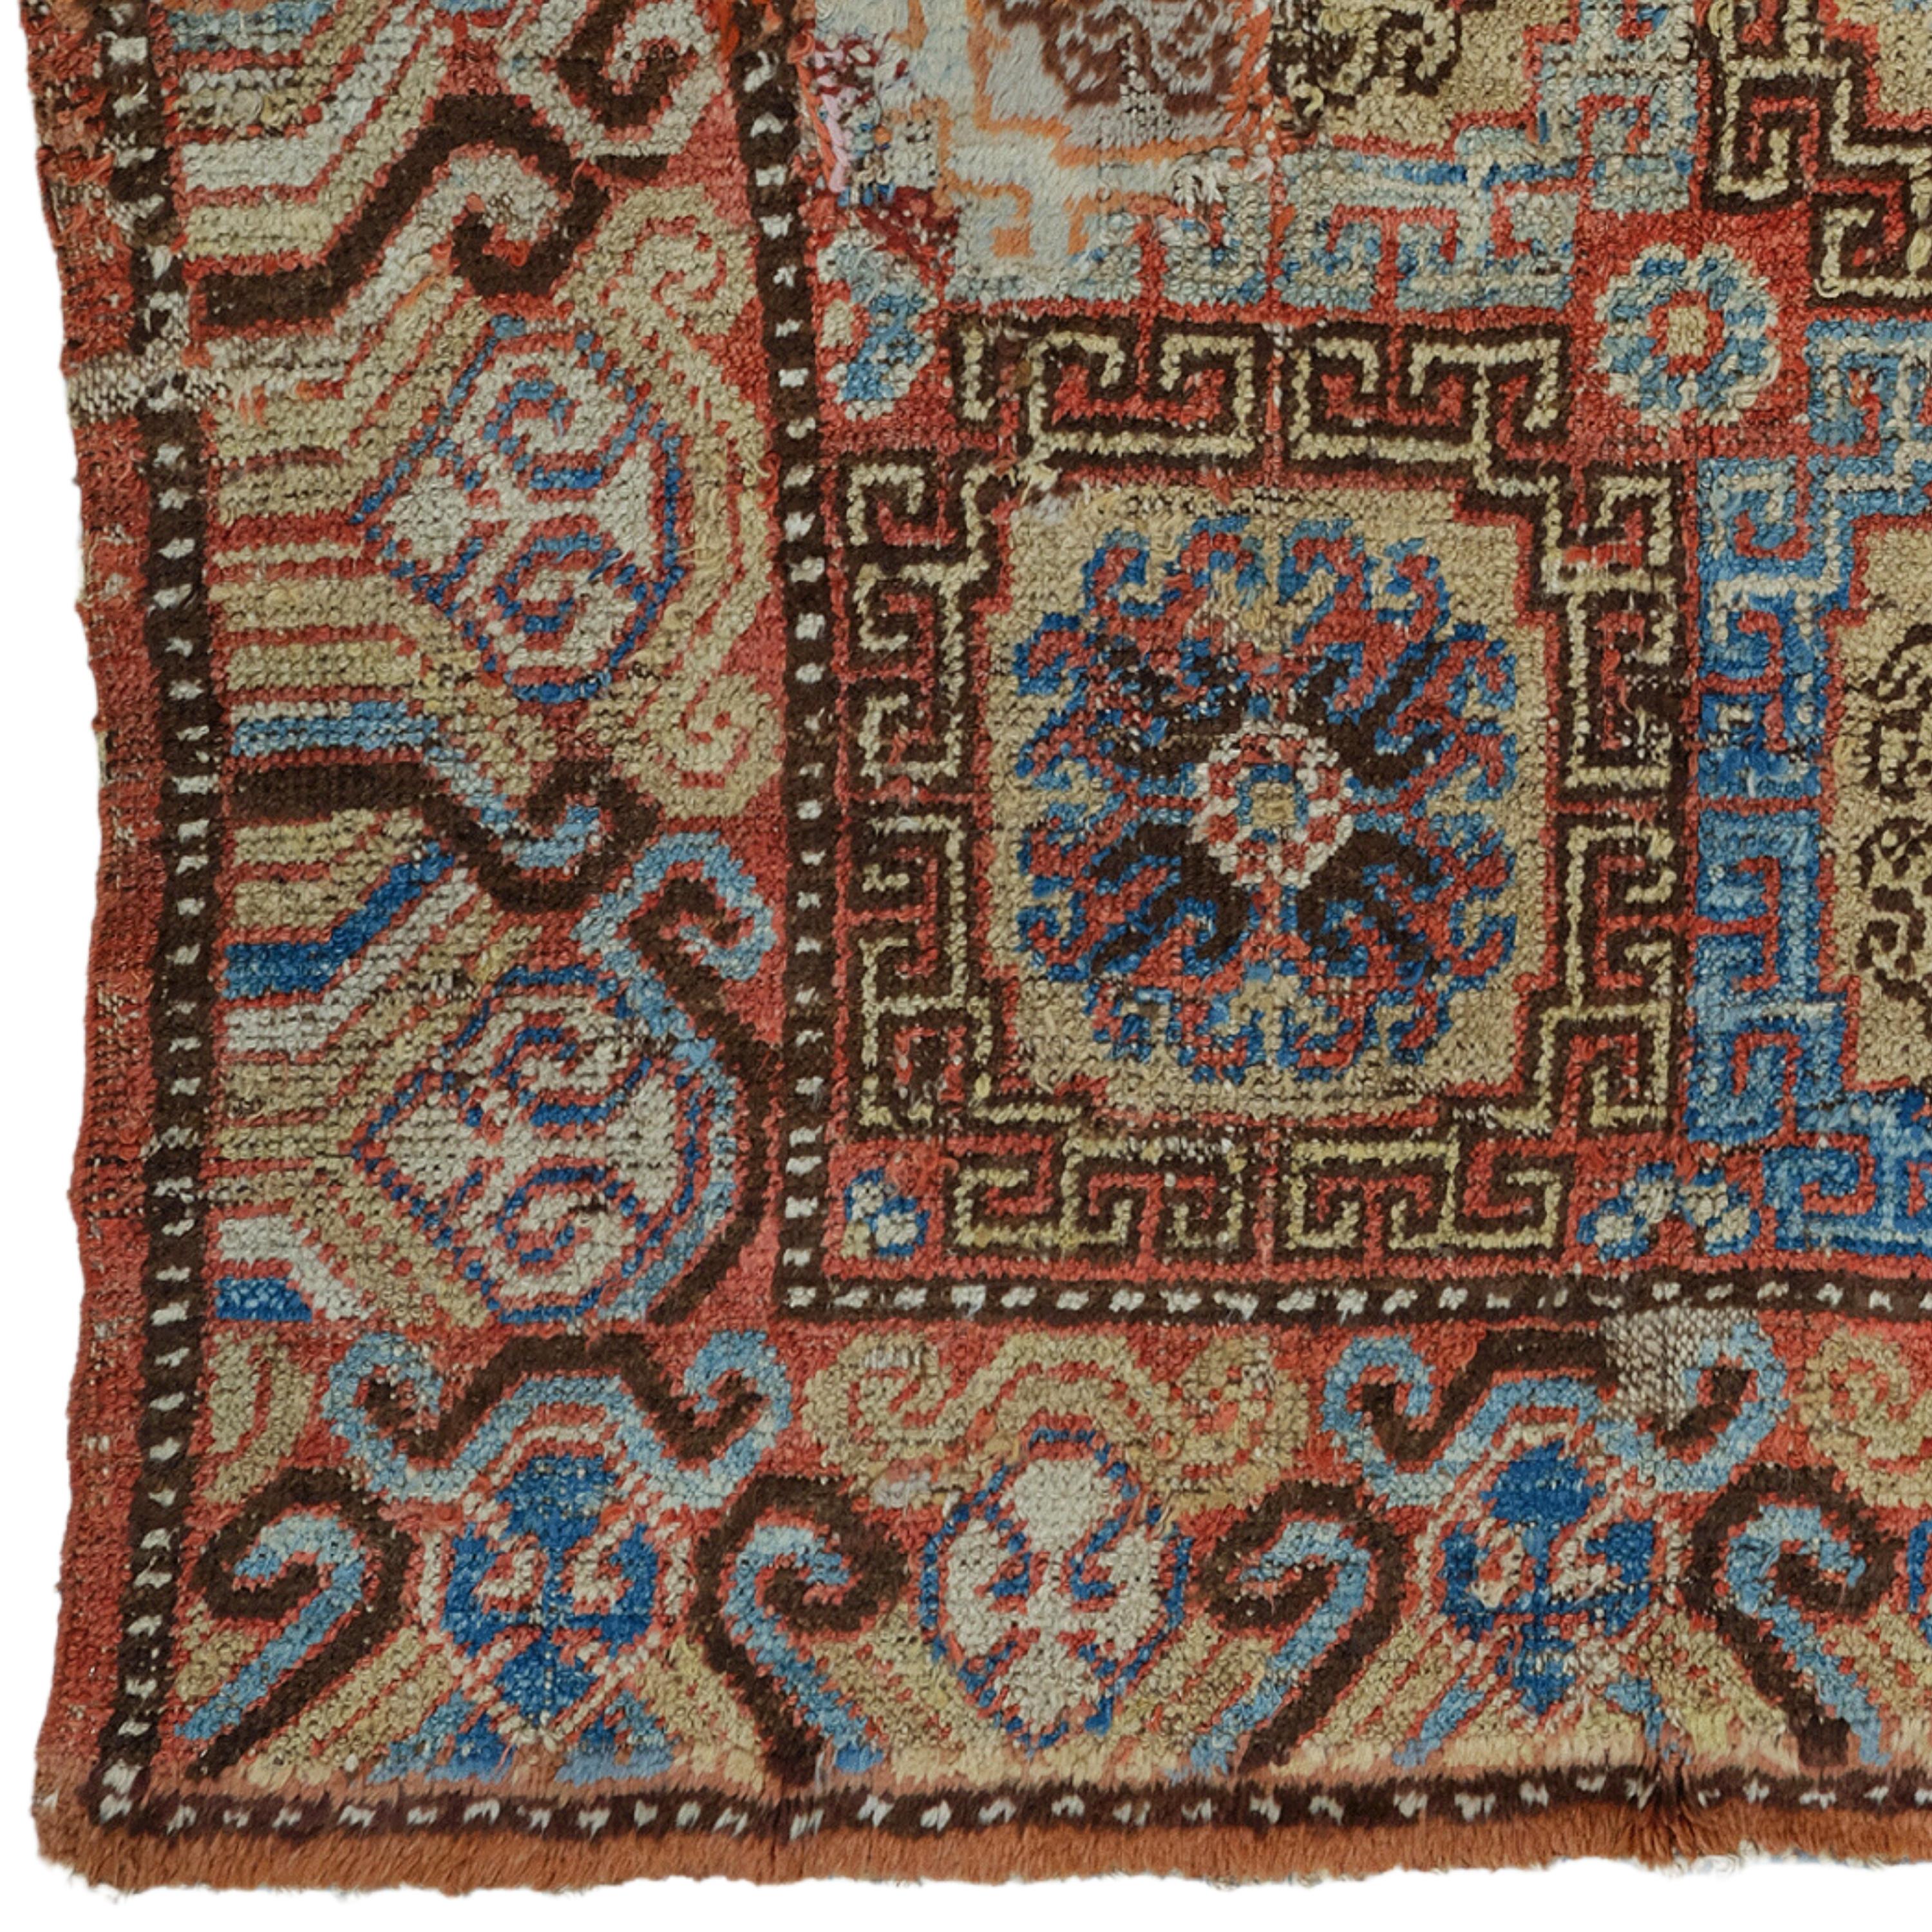 Khotan-Teppich aus dem 19. Jahrhundert - Handgewebter Teppich

Dieser elegante Khotan-Teppich aus dem 19. Jahrhundert verleiht jedem Raum mit seinem historischen Reichtum und seinem raffinierten Design eine edle Note. Dieses handgefertigte Werk mit